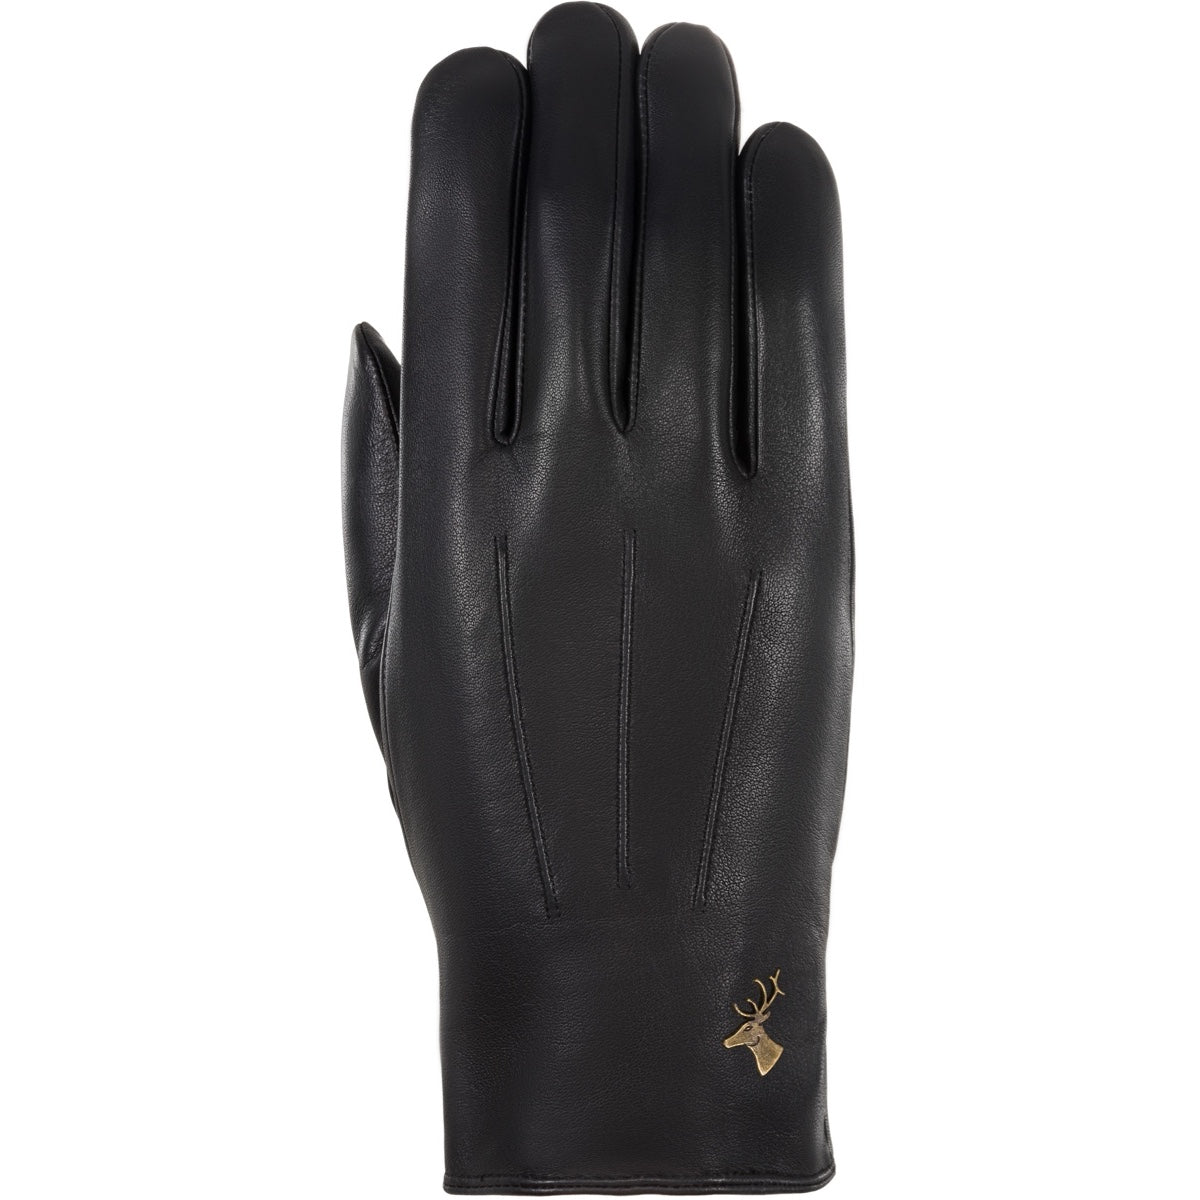 Leather Gloves Men Black Al Capone - Schwartz & von Halen® - Premium Leather Gloves - 1